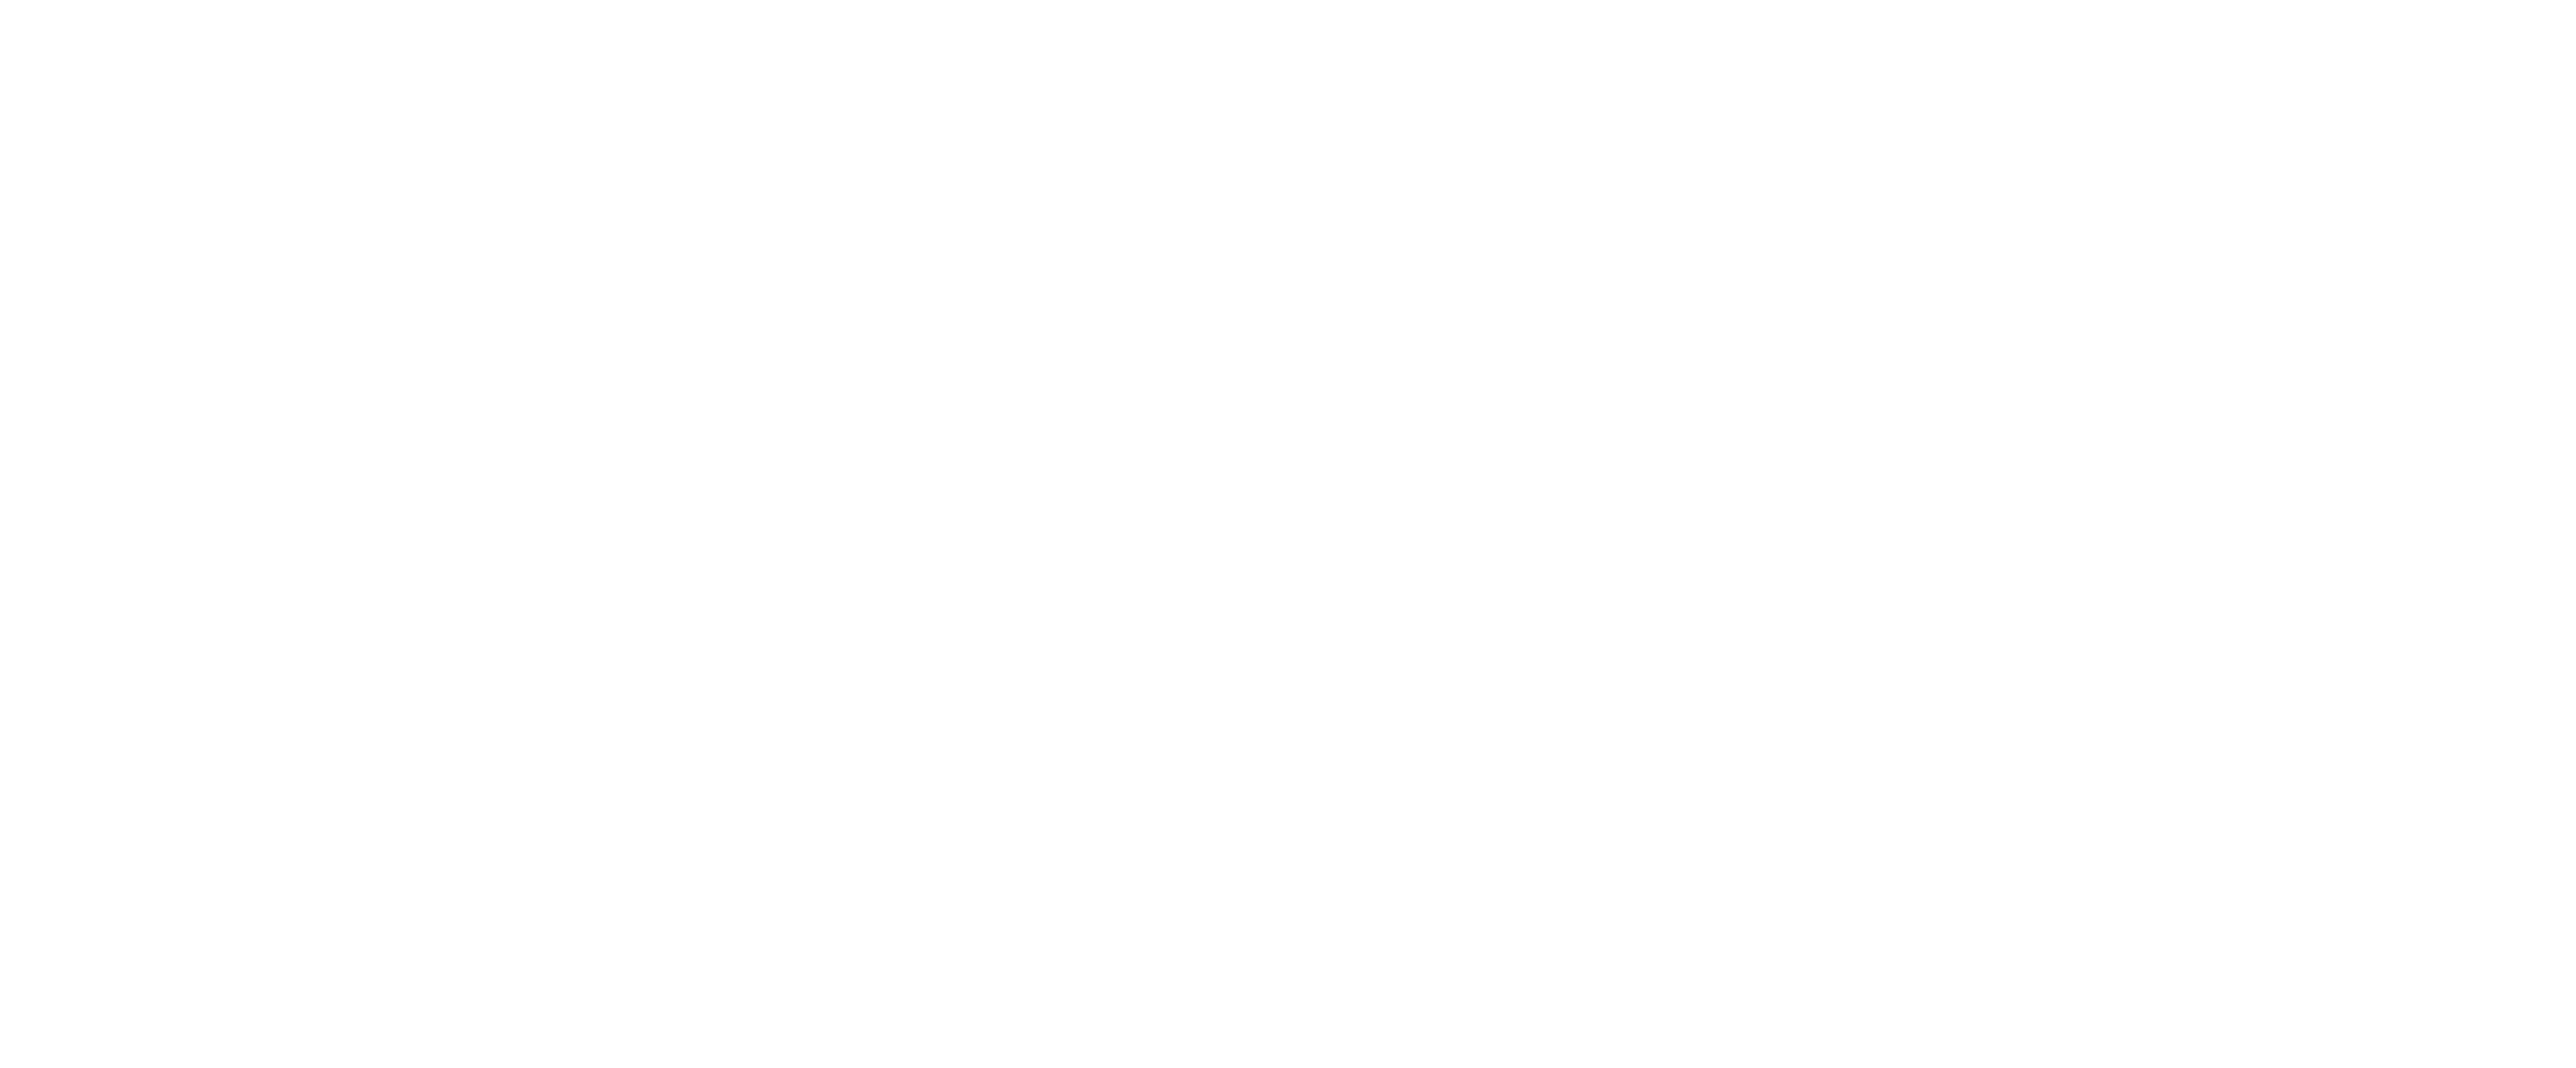 10 26 33. CAA logo.